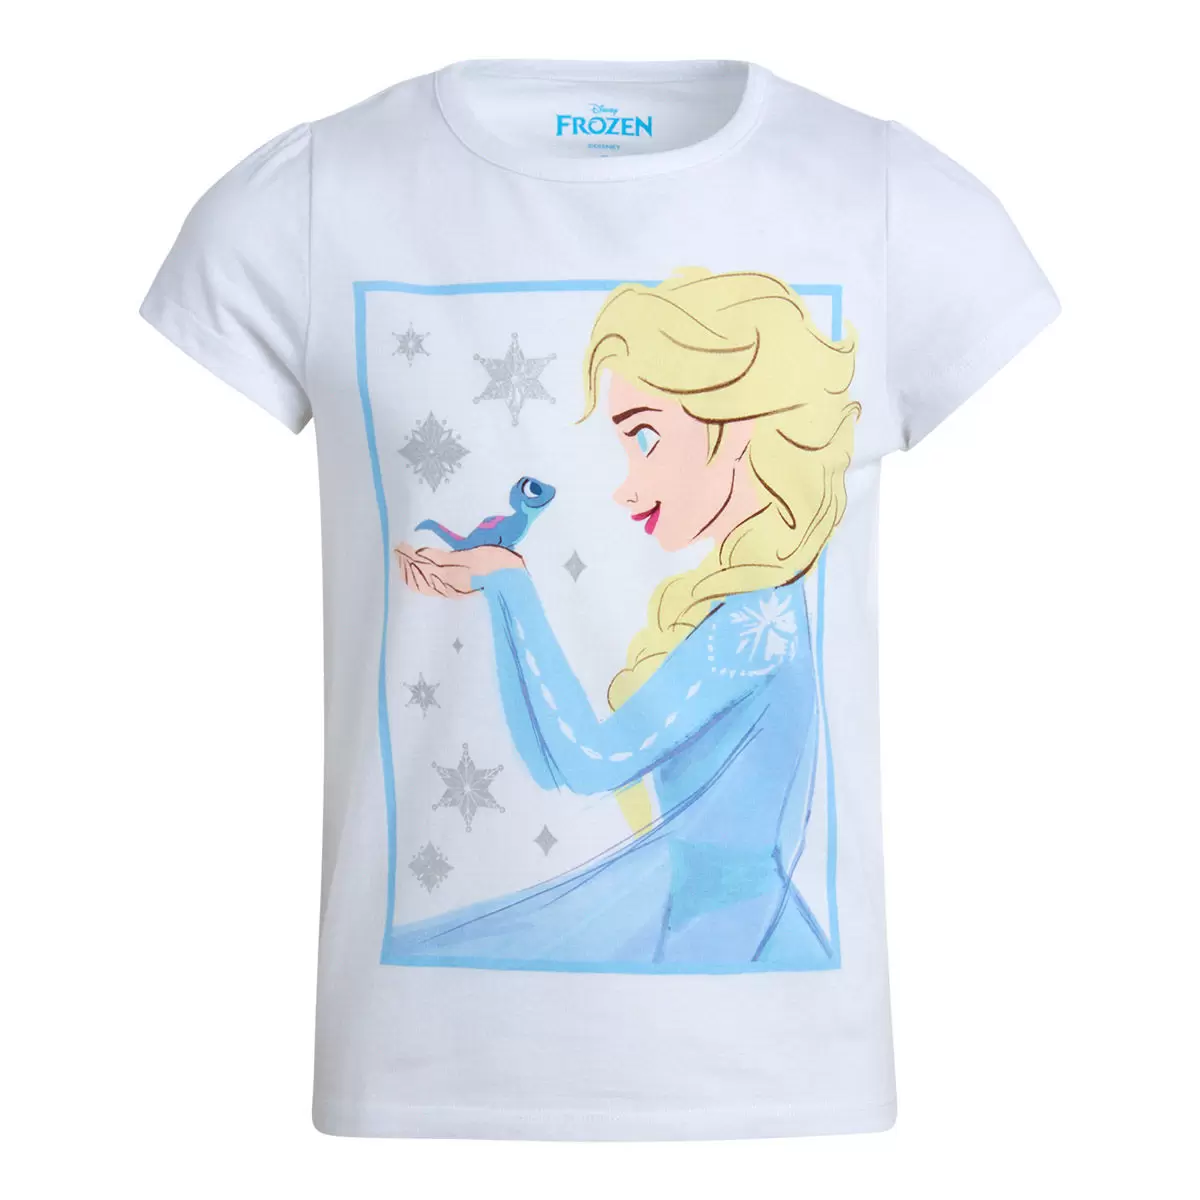 兒童卡通圖案短袖上衣四件組 Frozen 6T